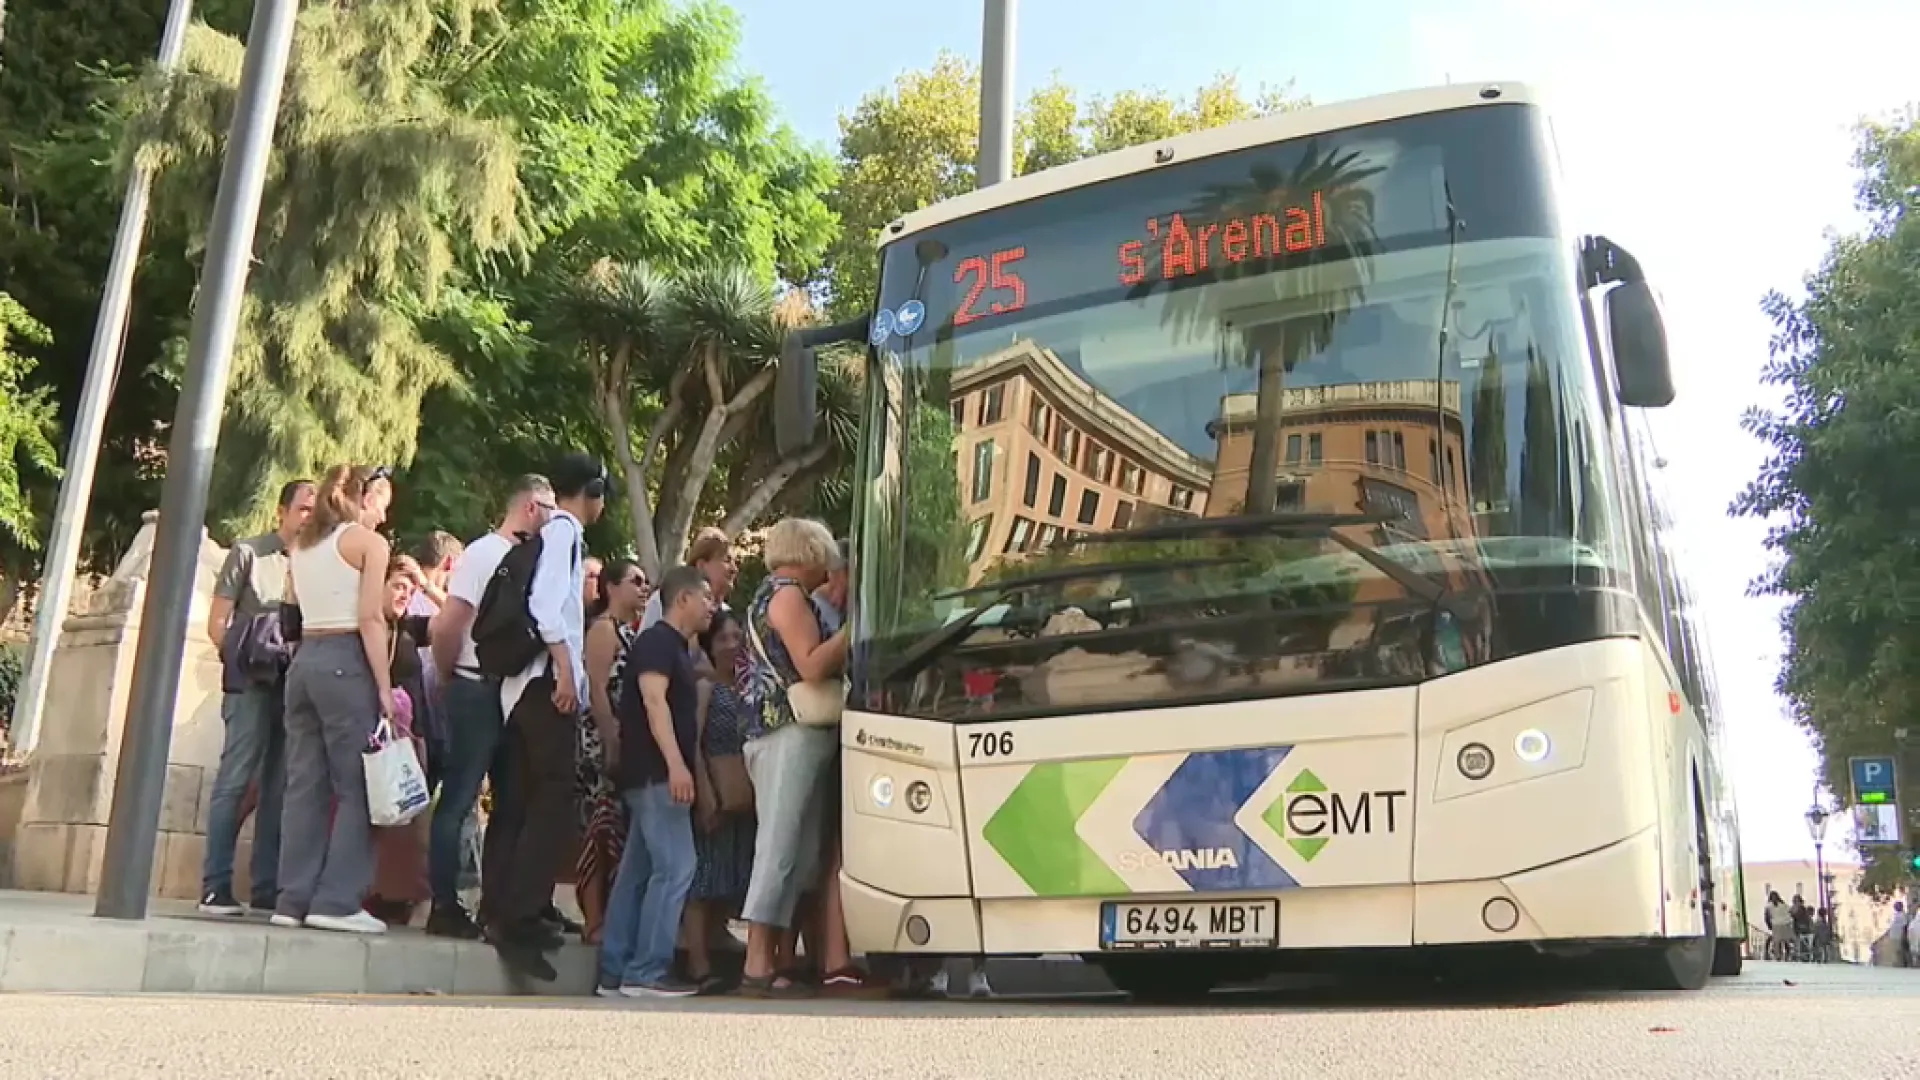 Palma torna a patir l’operació Nigul, amb caos a les parades d’autobusos i mancança de taxis disponibles